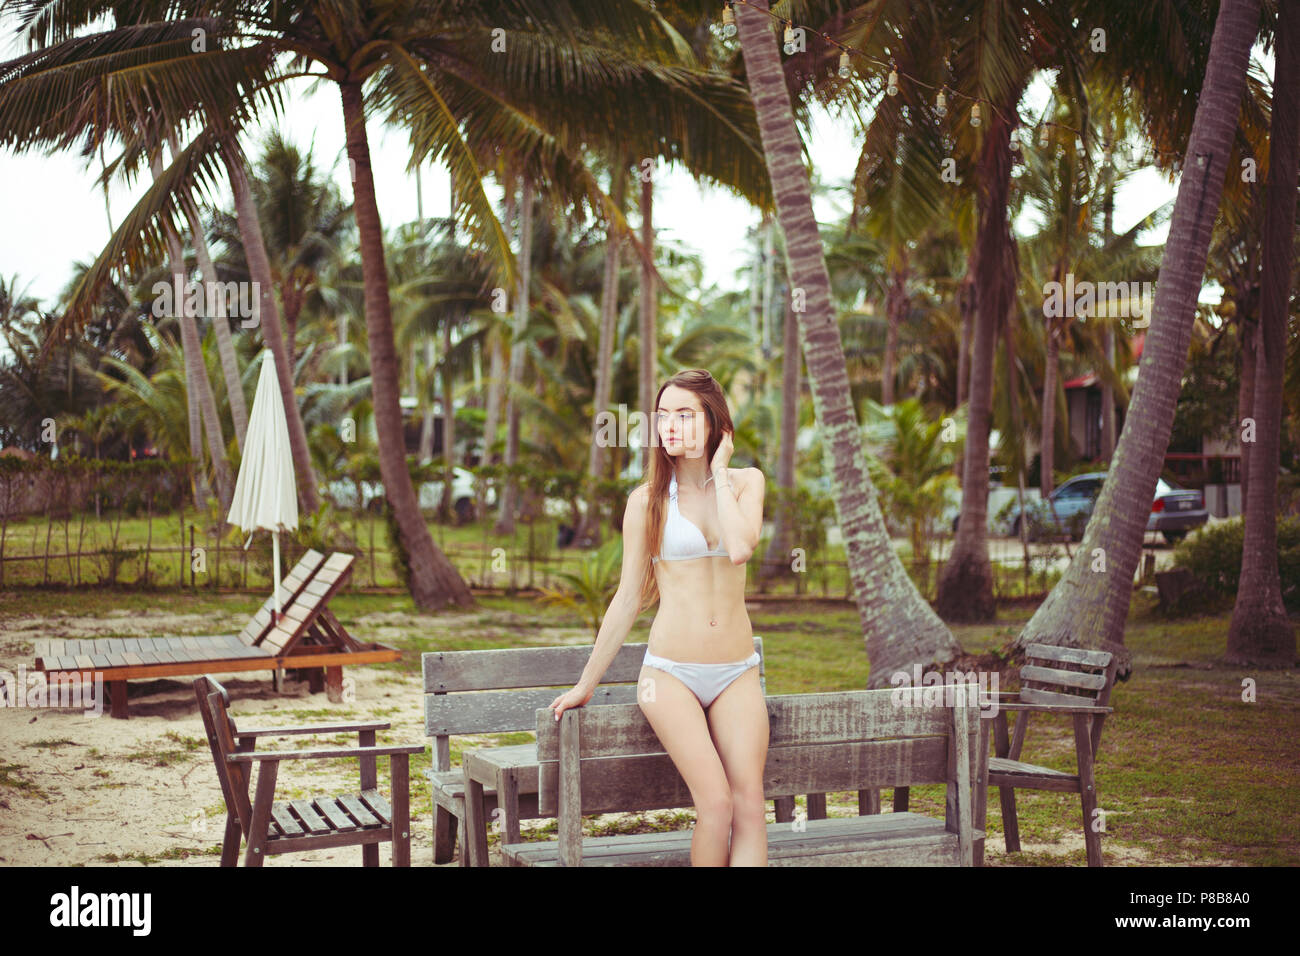 waardigheid laten vallen Huisje Bench bikini caucasian hi-res stock photography and images - Alamy